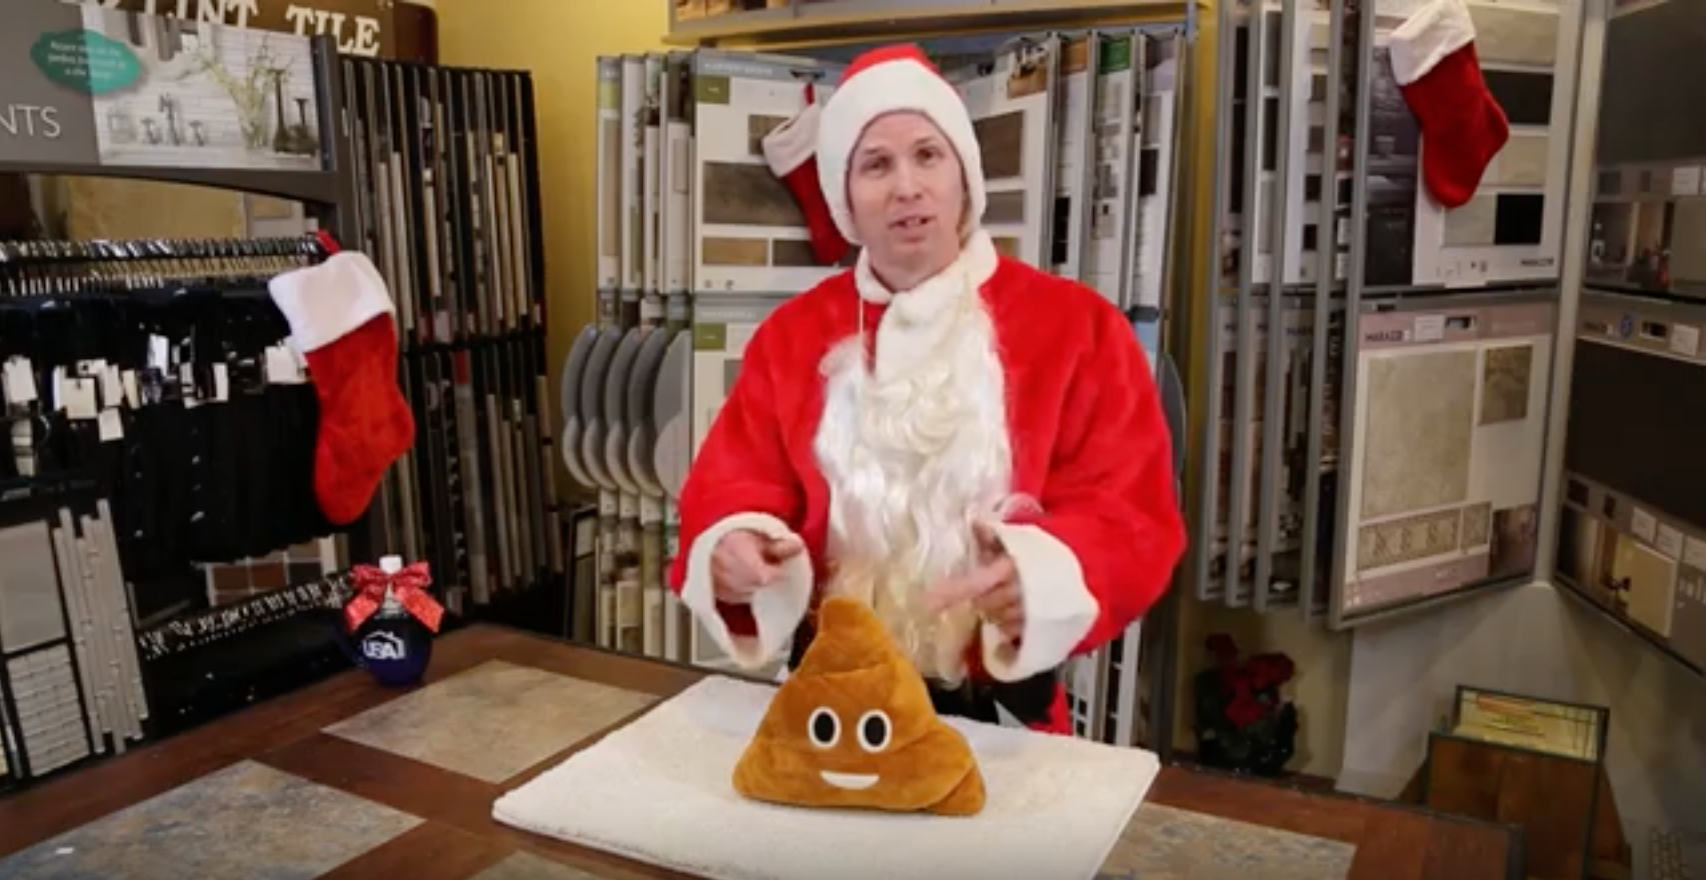 Why does Santa play with Poop Emoji’s?